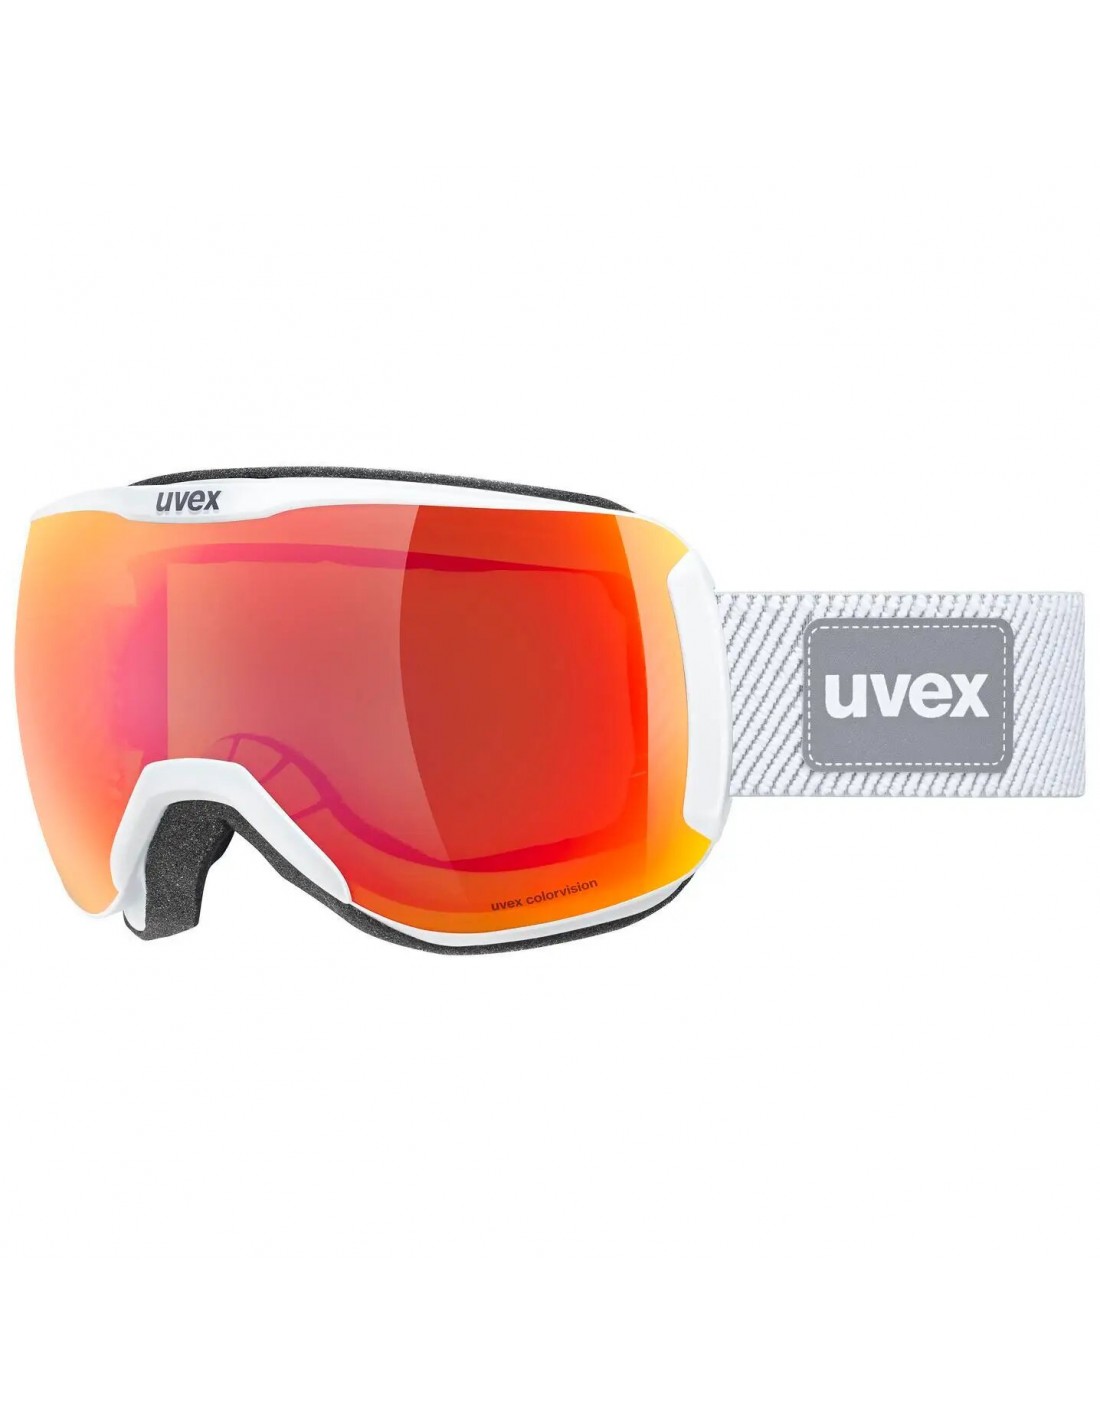 Uvex Skibrille Downhill 2100 CV Planet, white, mirror scarlet S2, colorvision green von Uvex